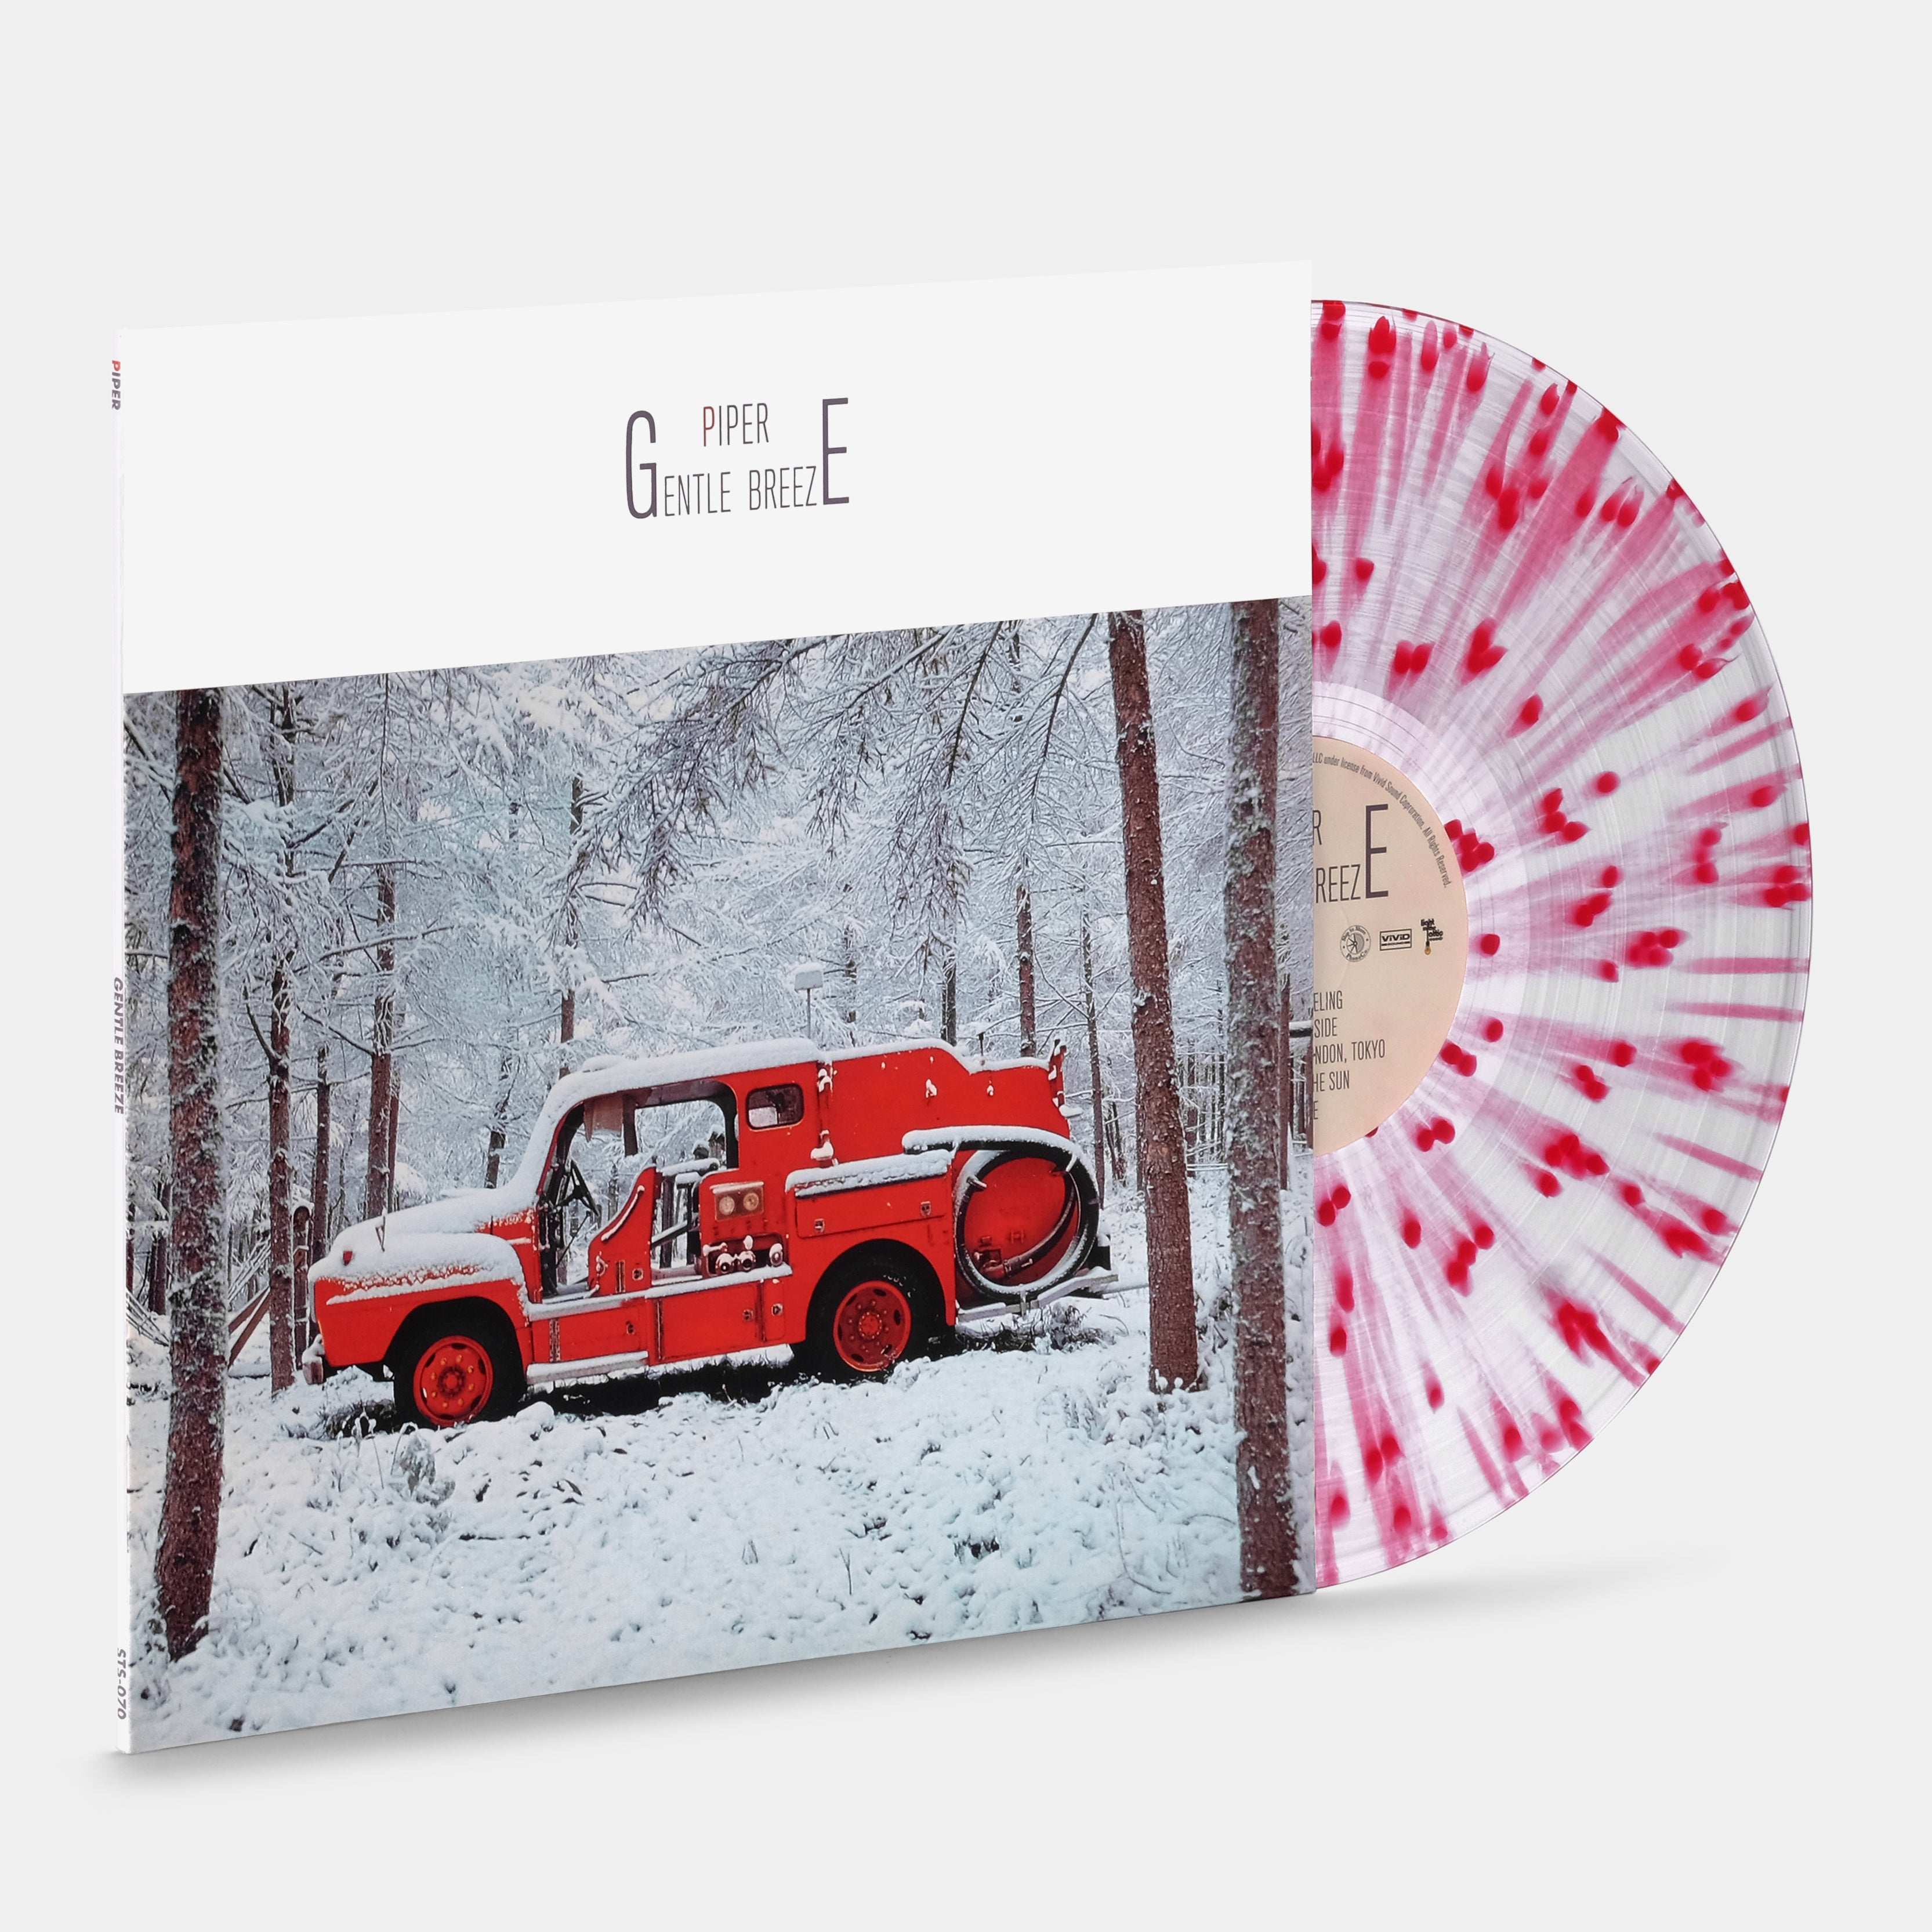 Piper  - Gentle Breeze LP Red Splatter Vinyl Record